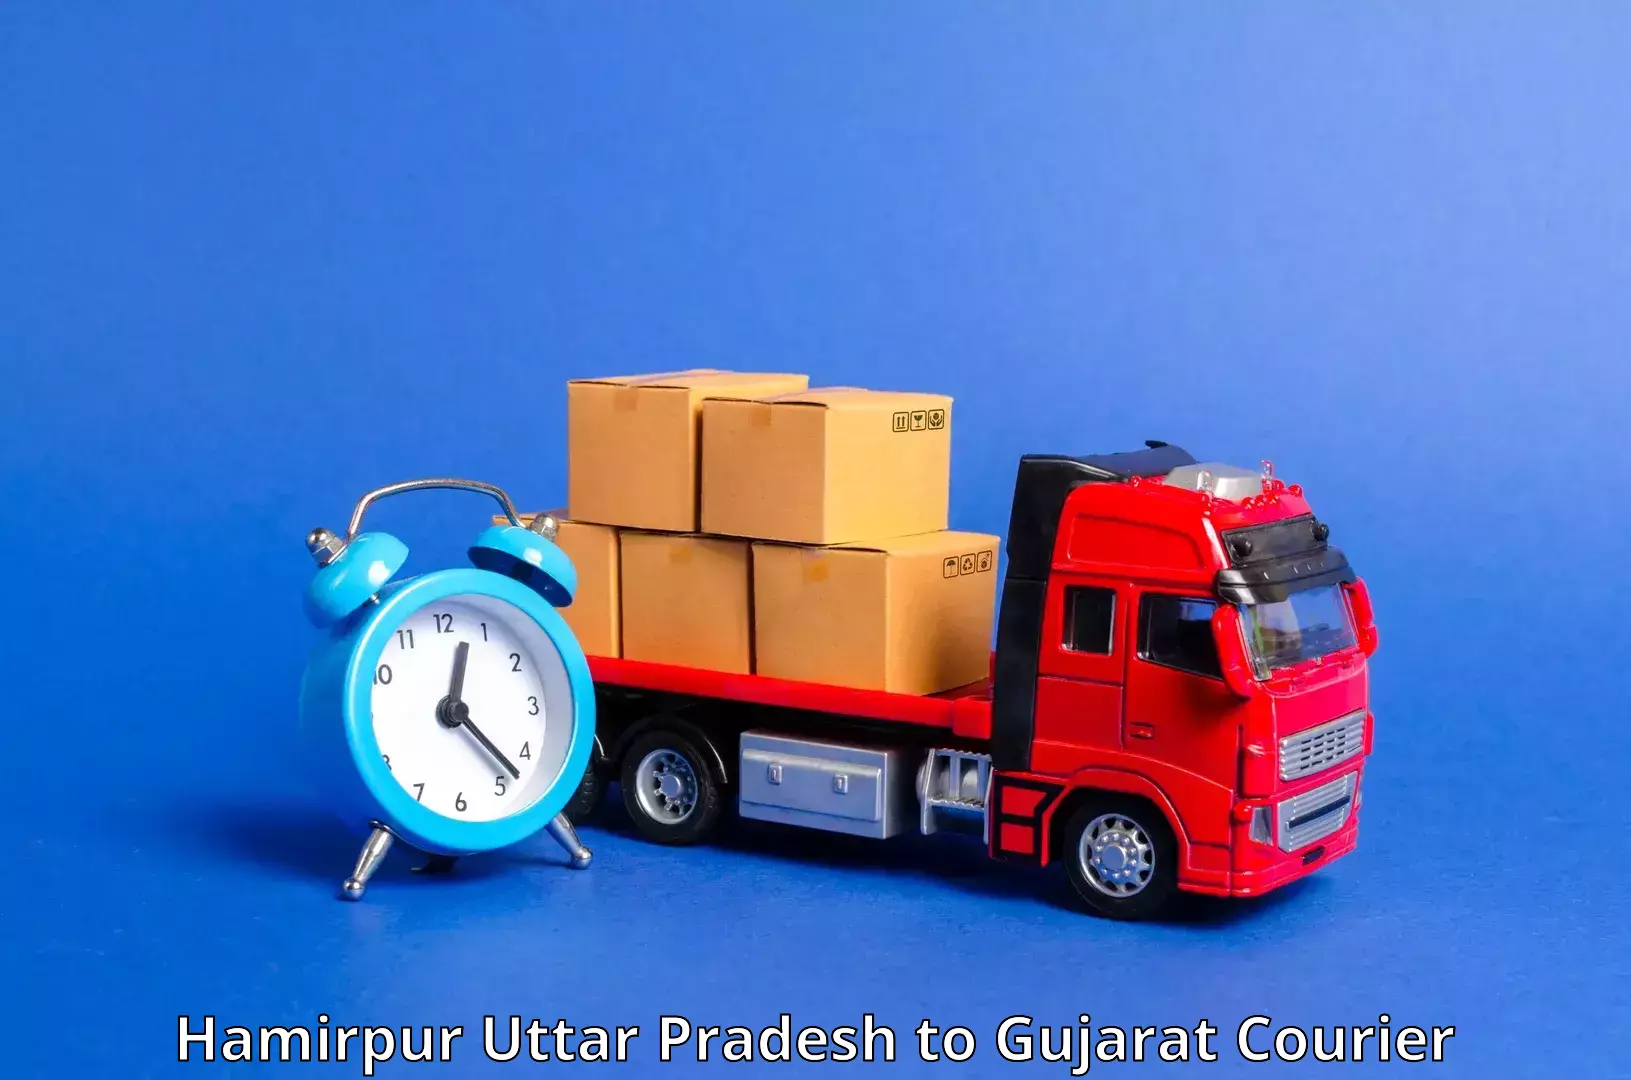 Cargo delivery service Hamirpur Uttar Pradesh to Bhilad